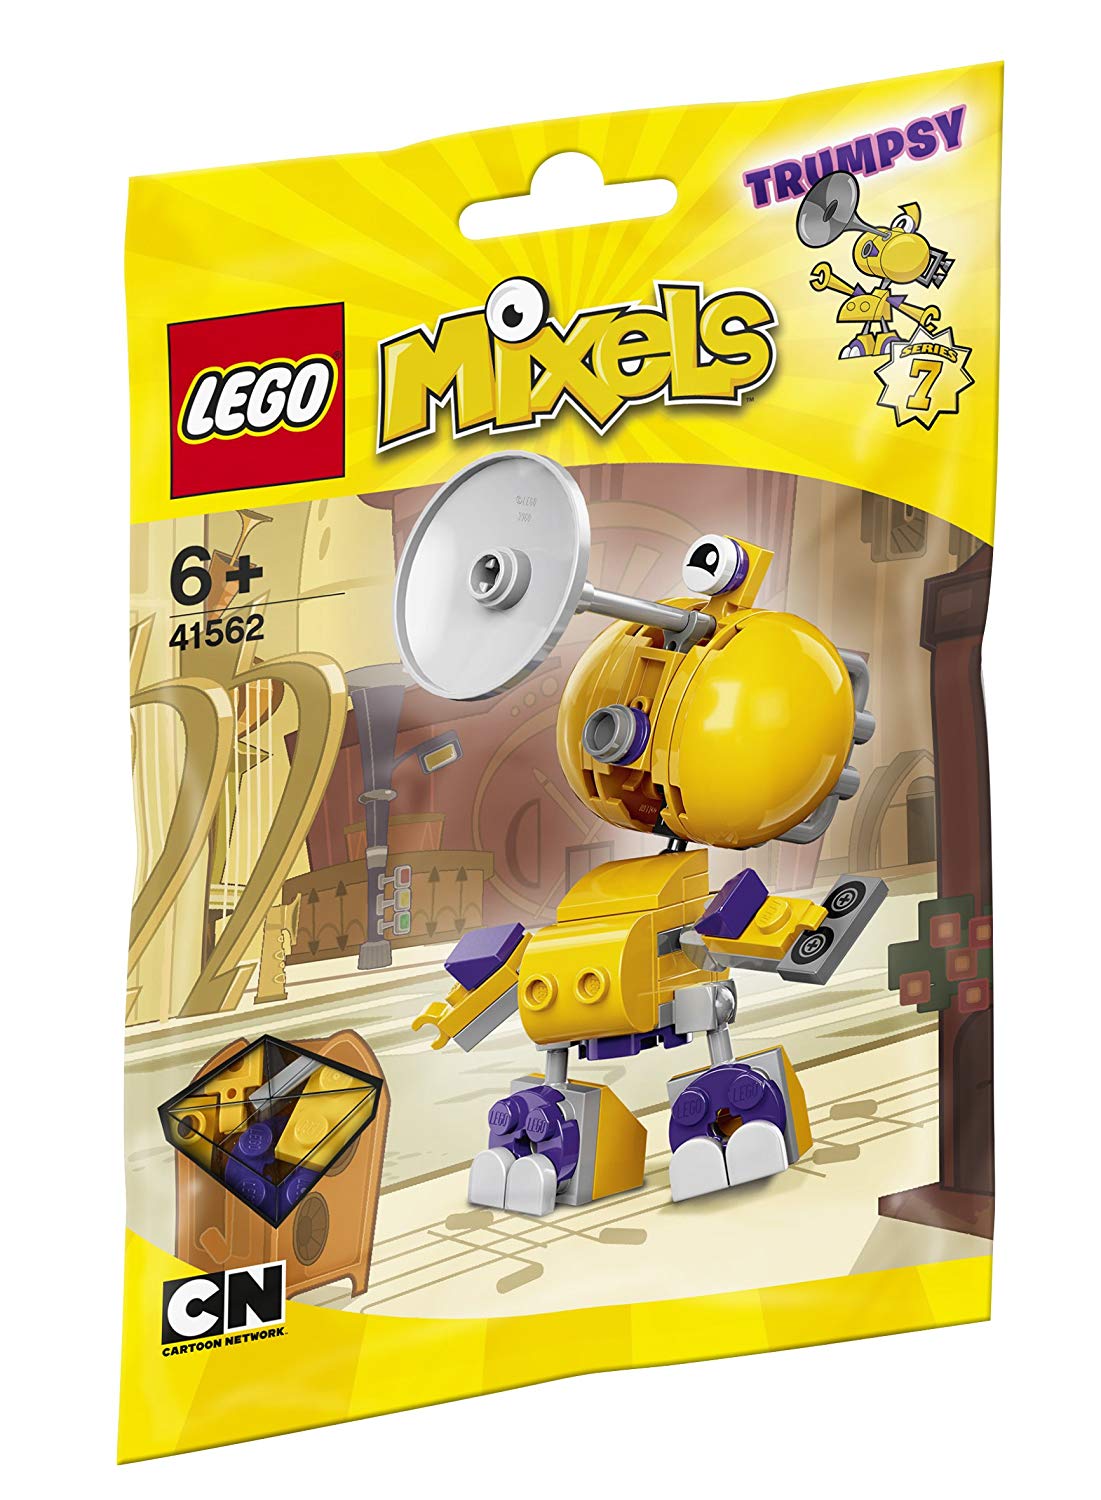 Lego Mixels Trumpsy